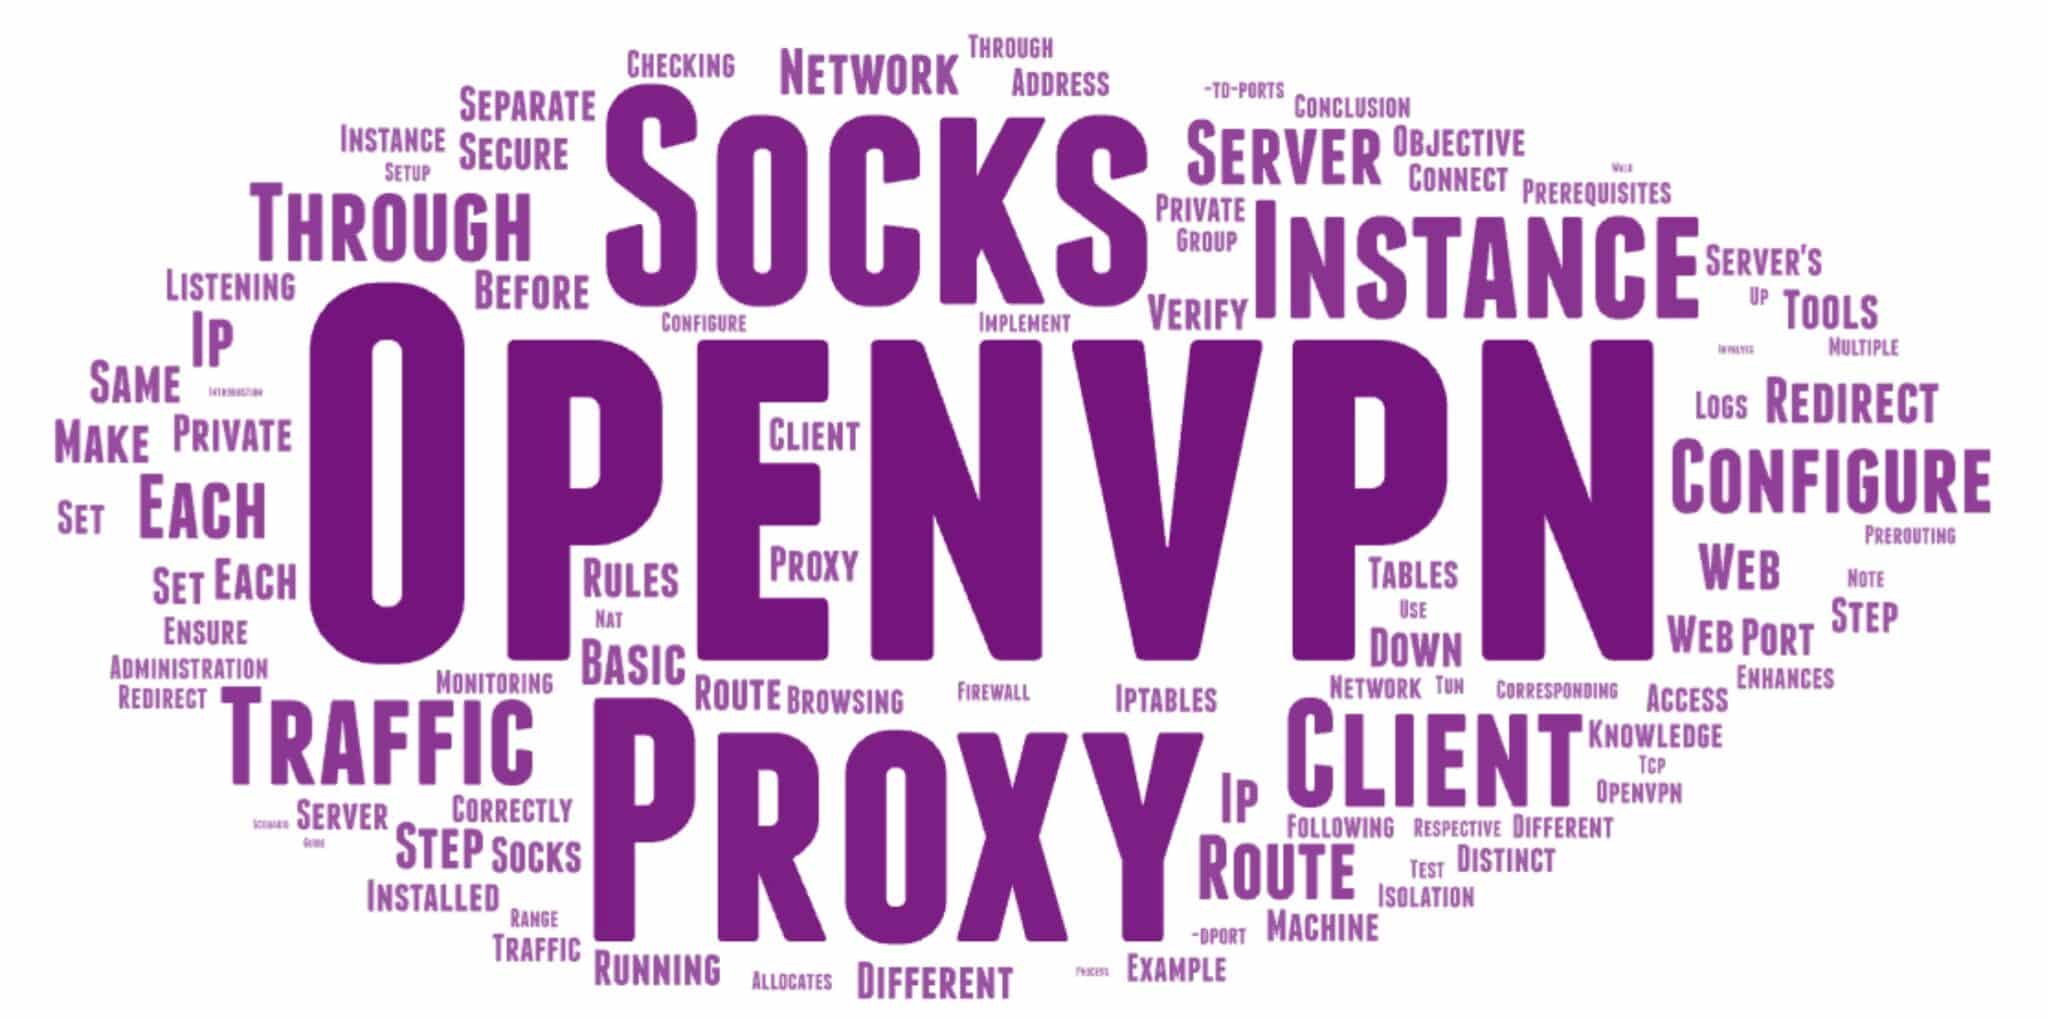 Реализация многоэкземплярного OpenVPN с прокси-сервером Socks для безопасного просмотра веб-страниц